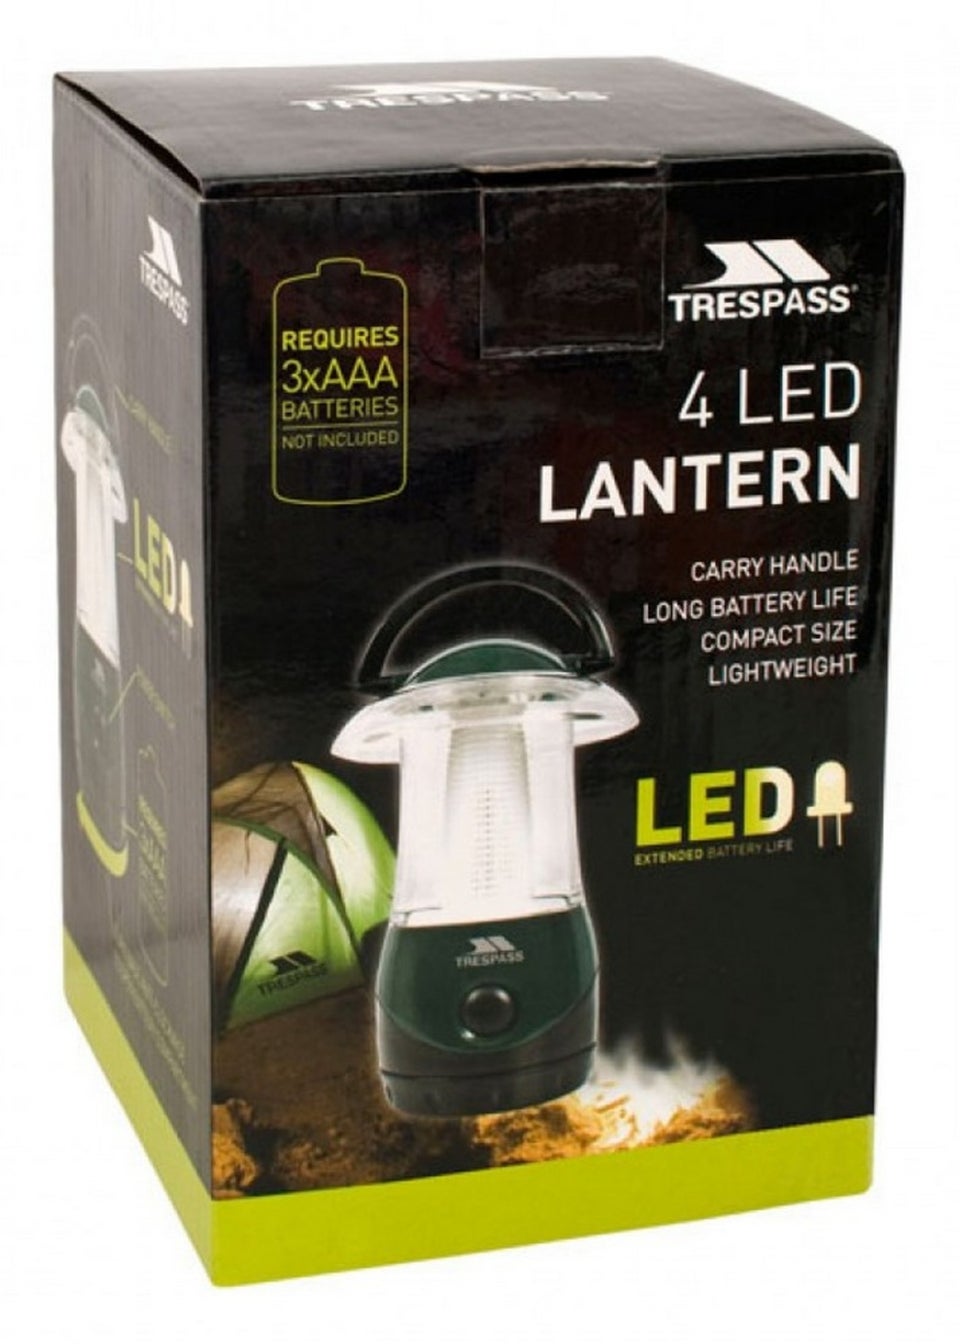 Trespass Dark Green Embers 4 LED Battery Lightweight Lantern